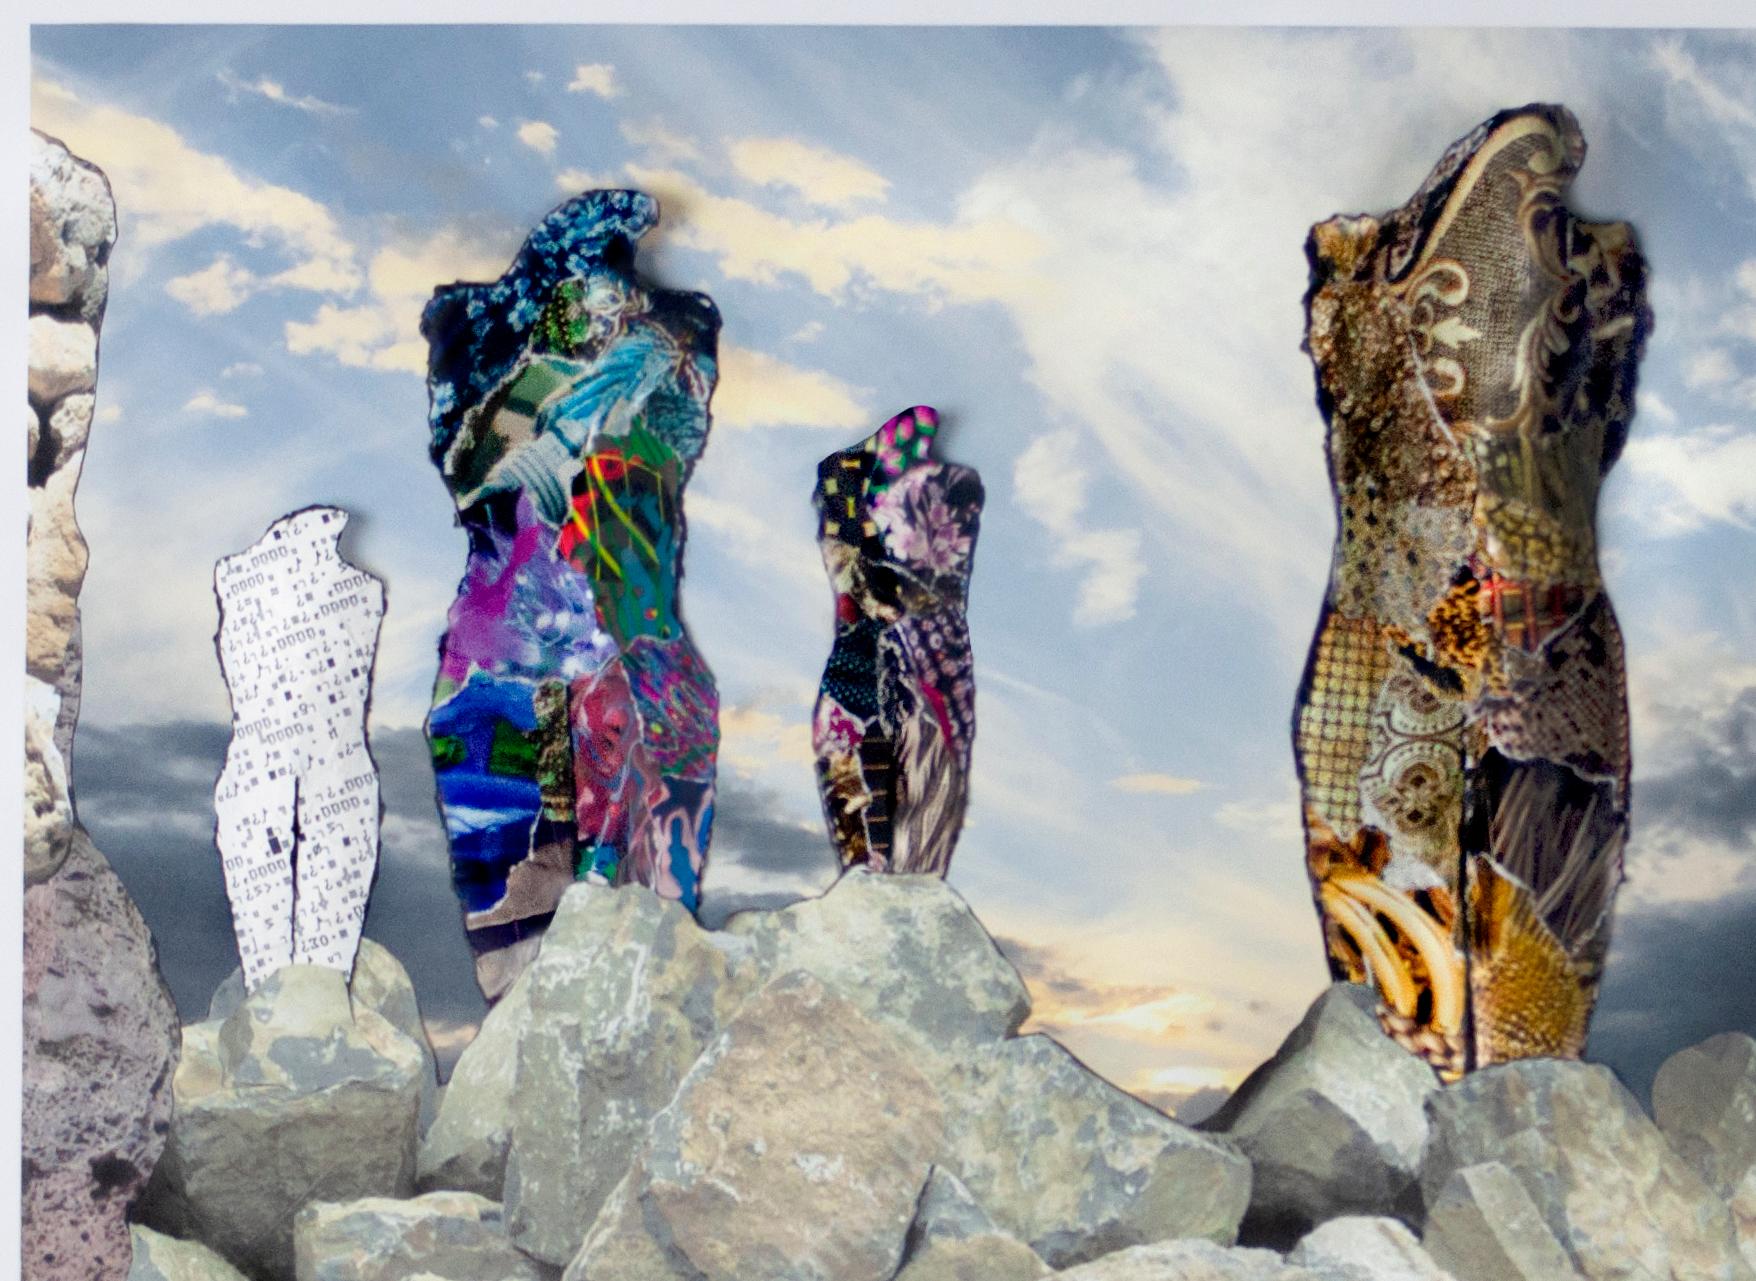 Six personnages s'élevant sur une terre rocheuse 1000 - Collage de dessin sculptural en 3D - Contemporain Mixed Media Art par Linda Stein